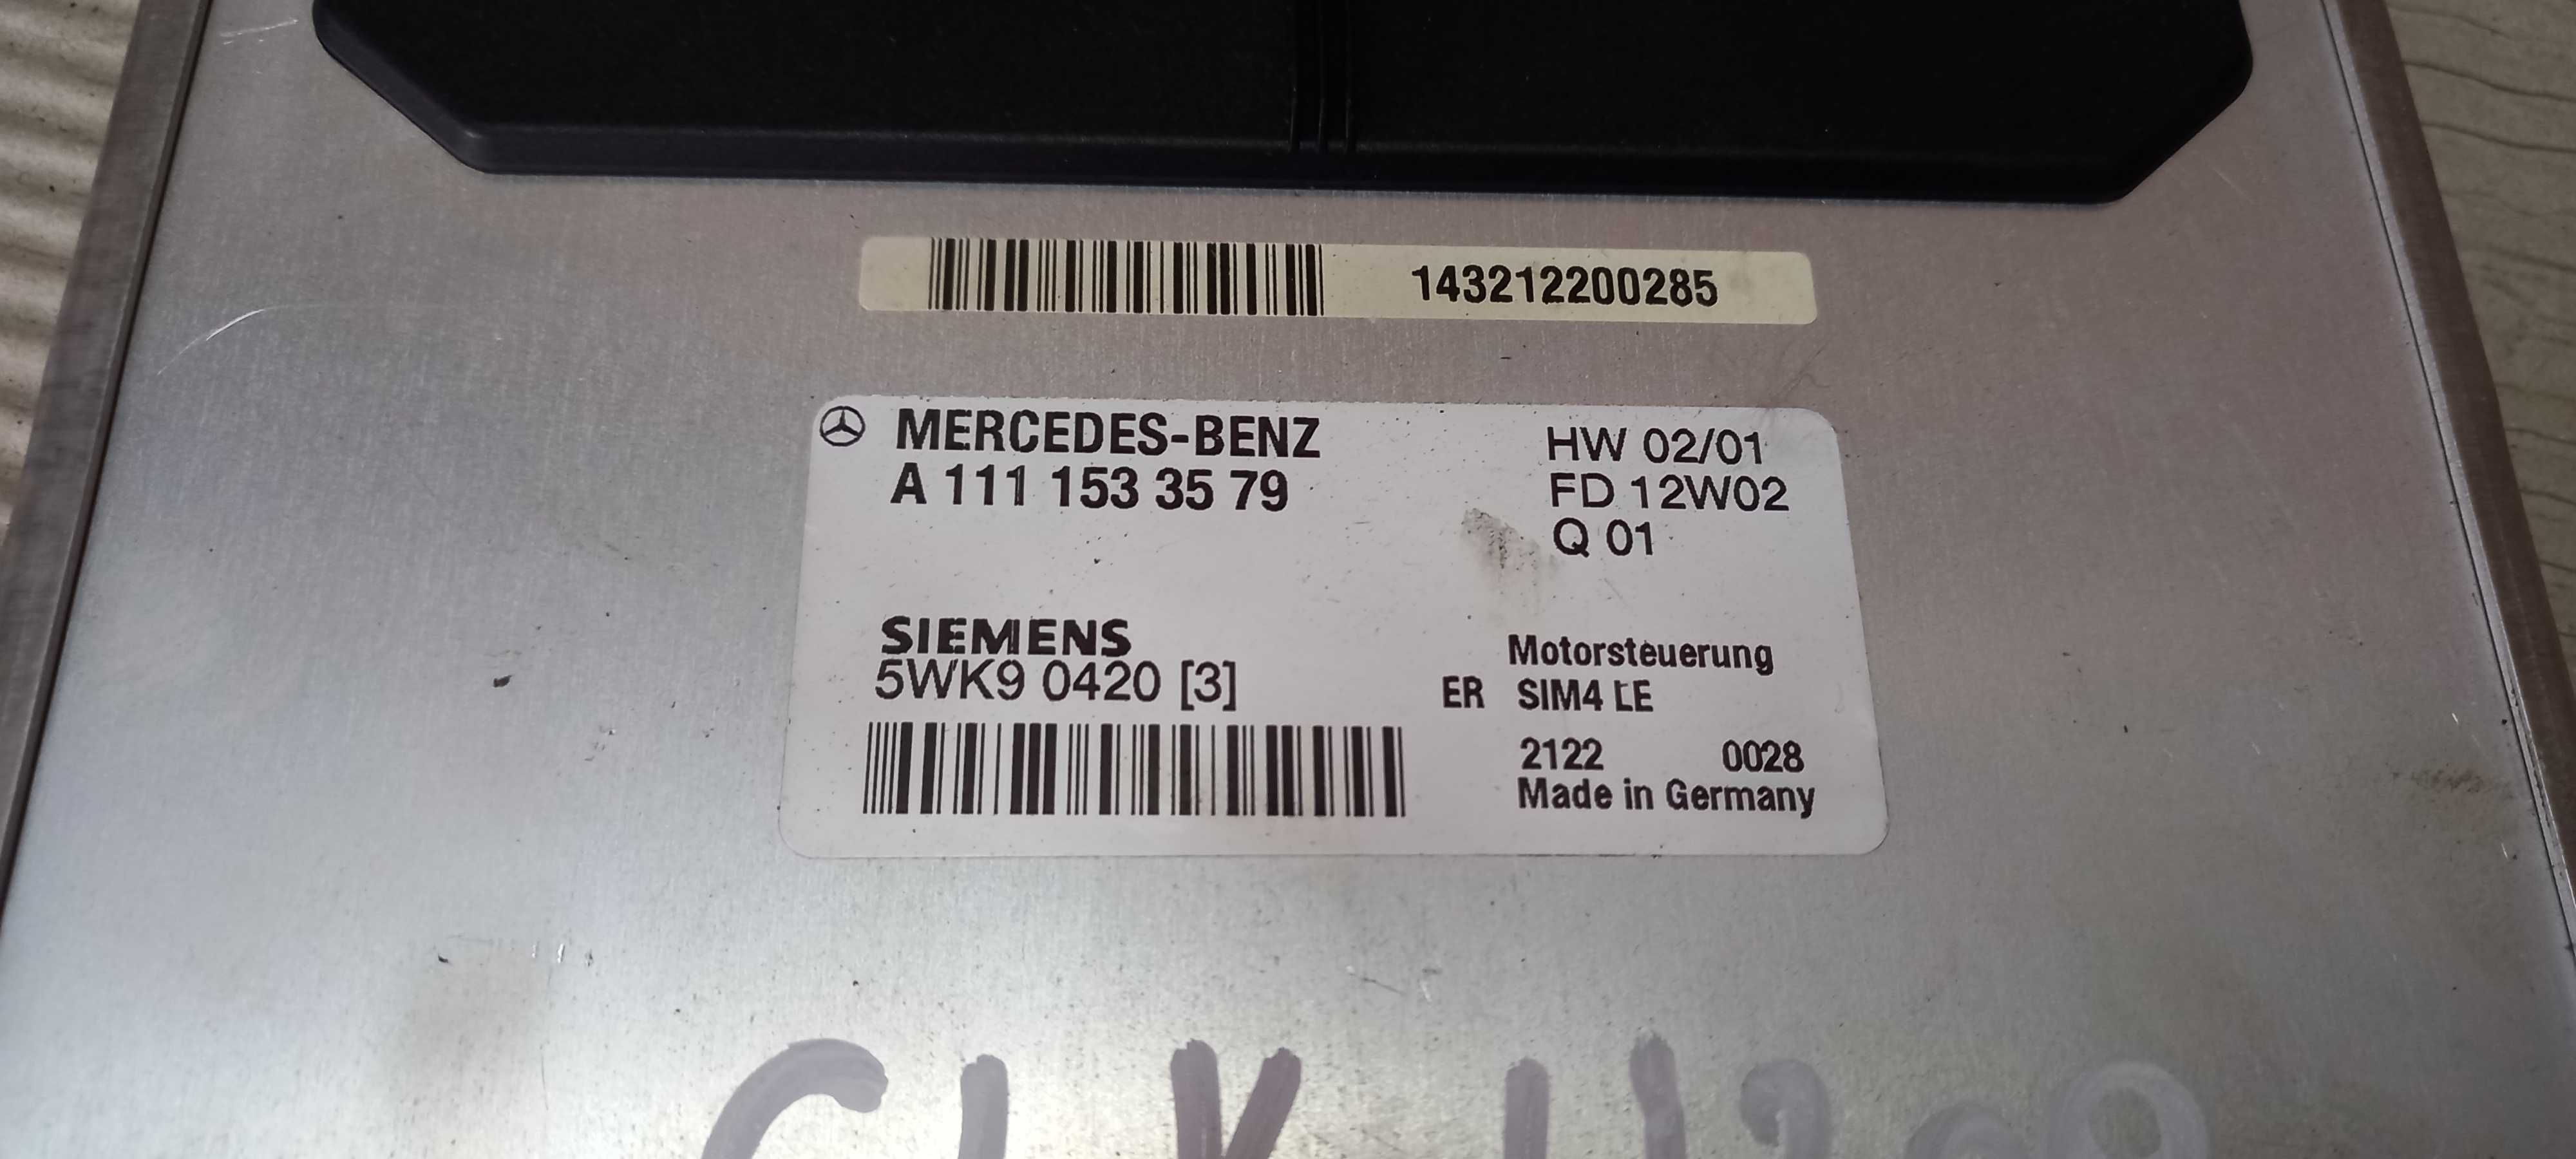 Komputer Mercedes CLK W208 Kompressor -3579